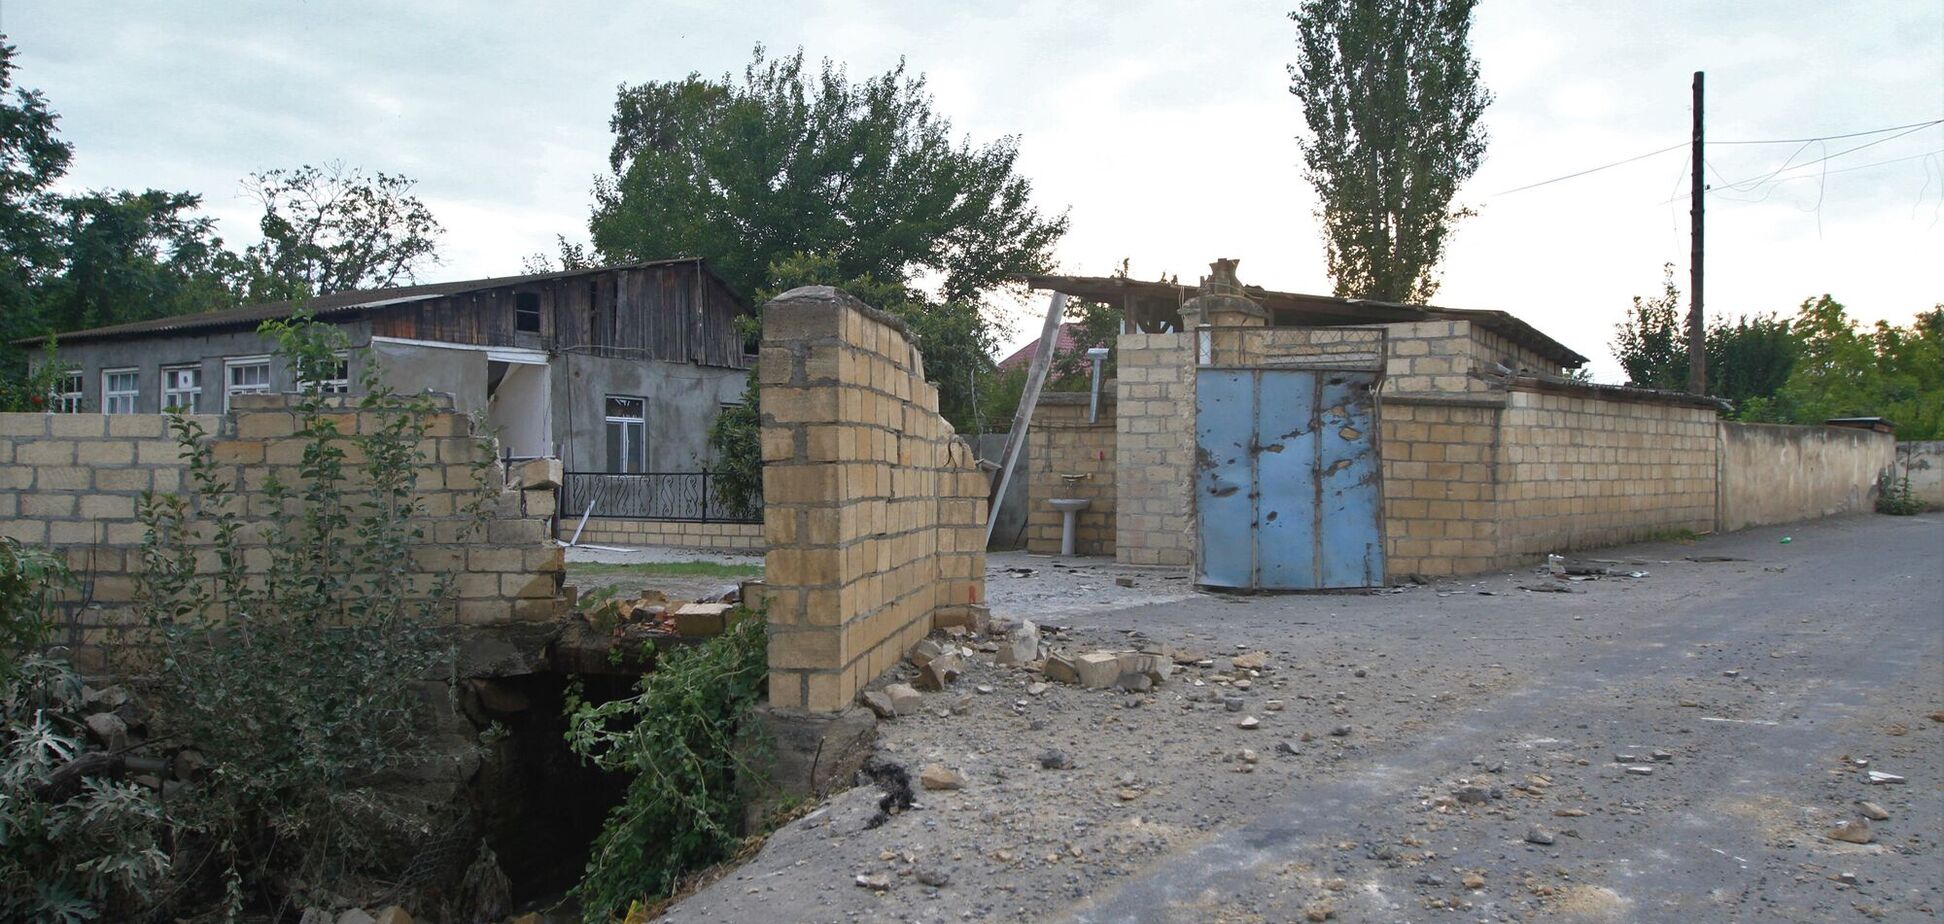 Азербайджан поймал момент и начал вышибать оккупанта со своей земли